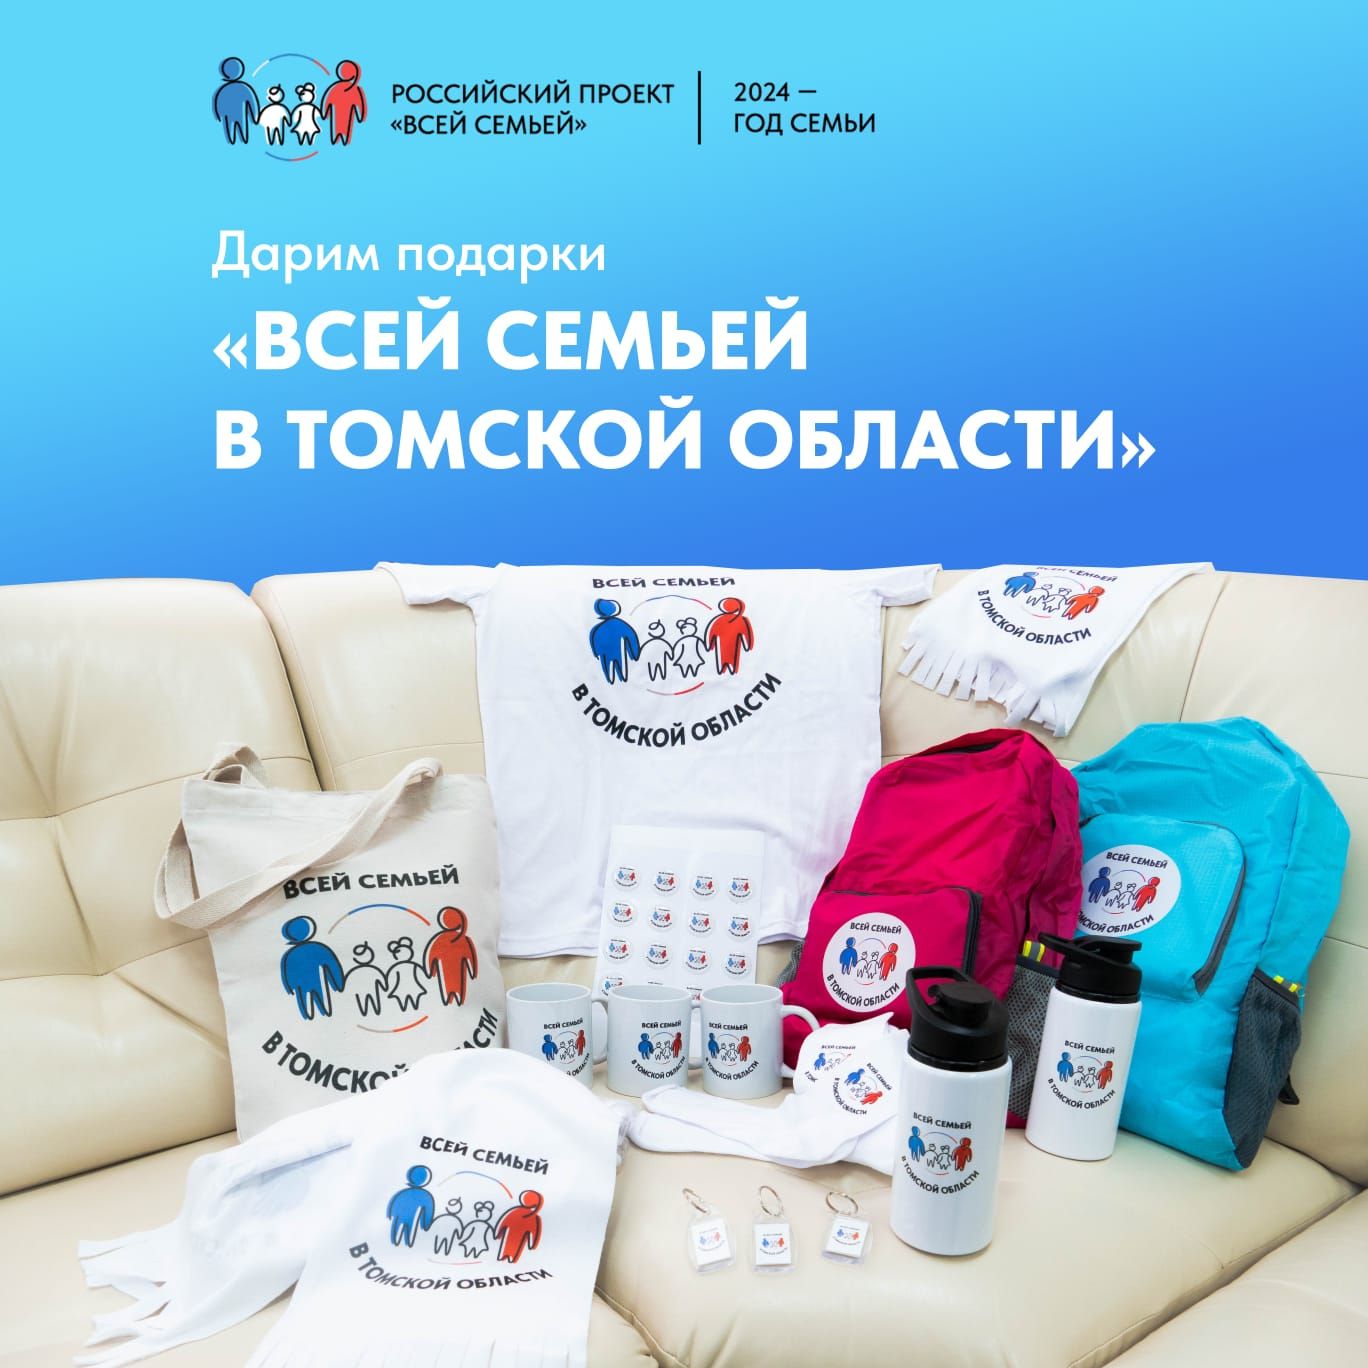 Дарим подарки «Всей семьей в Томской области»!